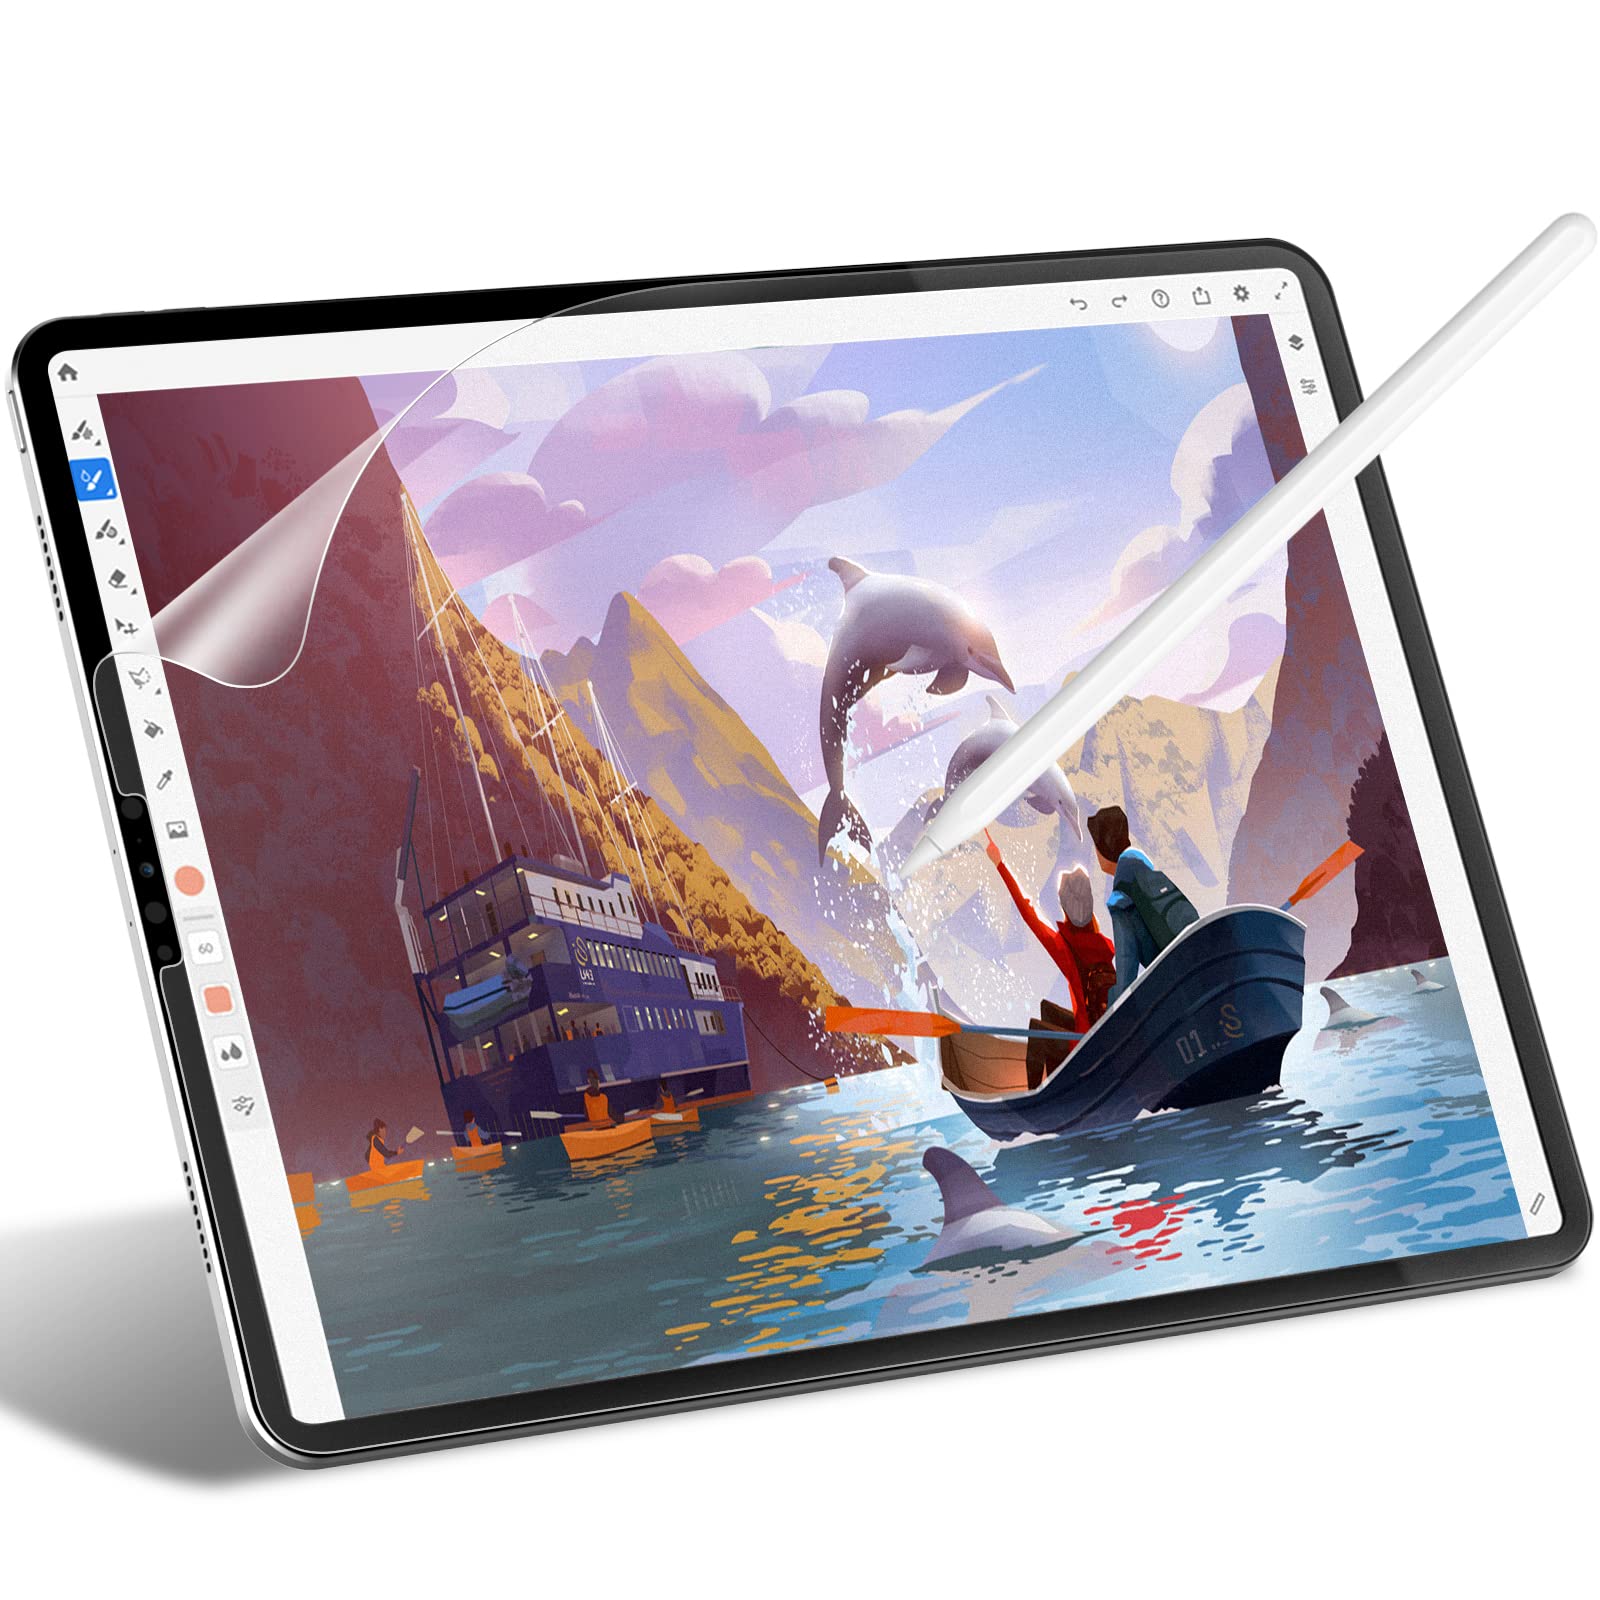 Paperfeel skärmskydd för iPad Pro 11 tum (2020) matt finish Anti-glare för att skriva och rita skärmskydd